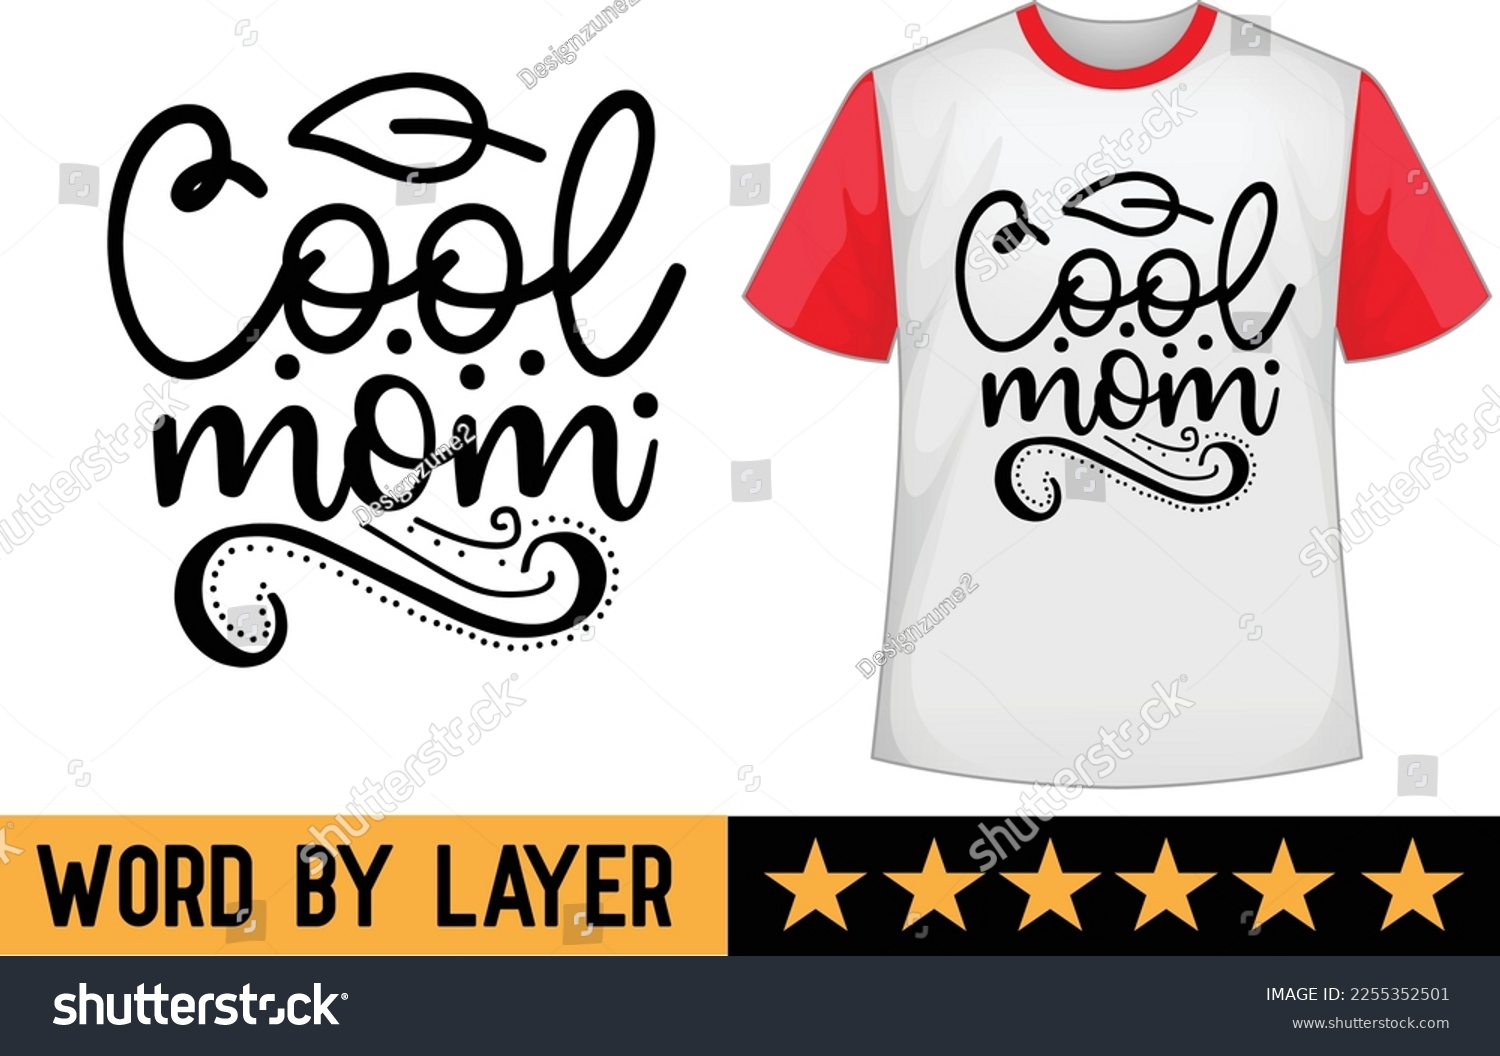 SVG of Cool Mom svg t shirt design svg